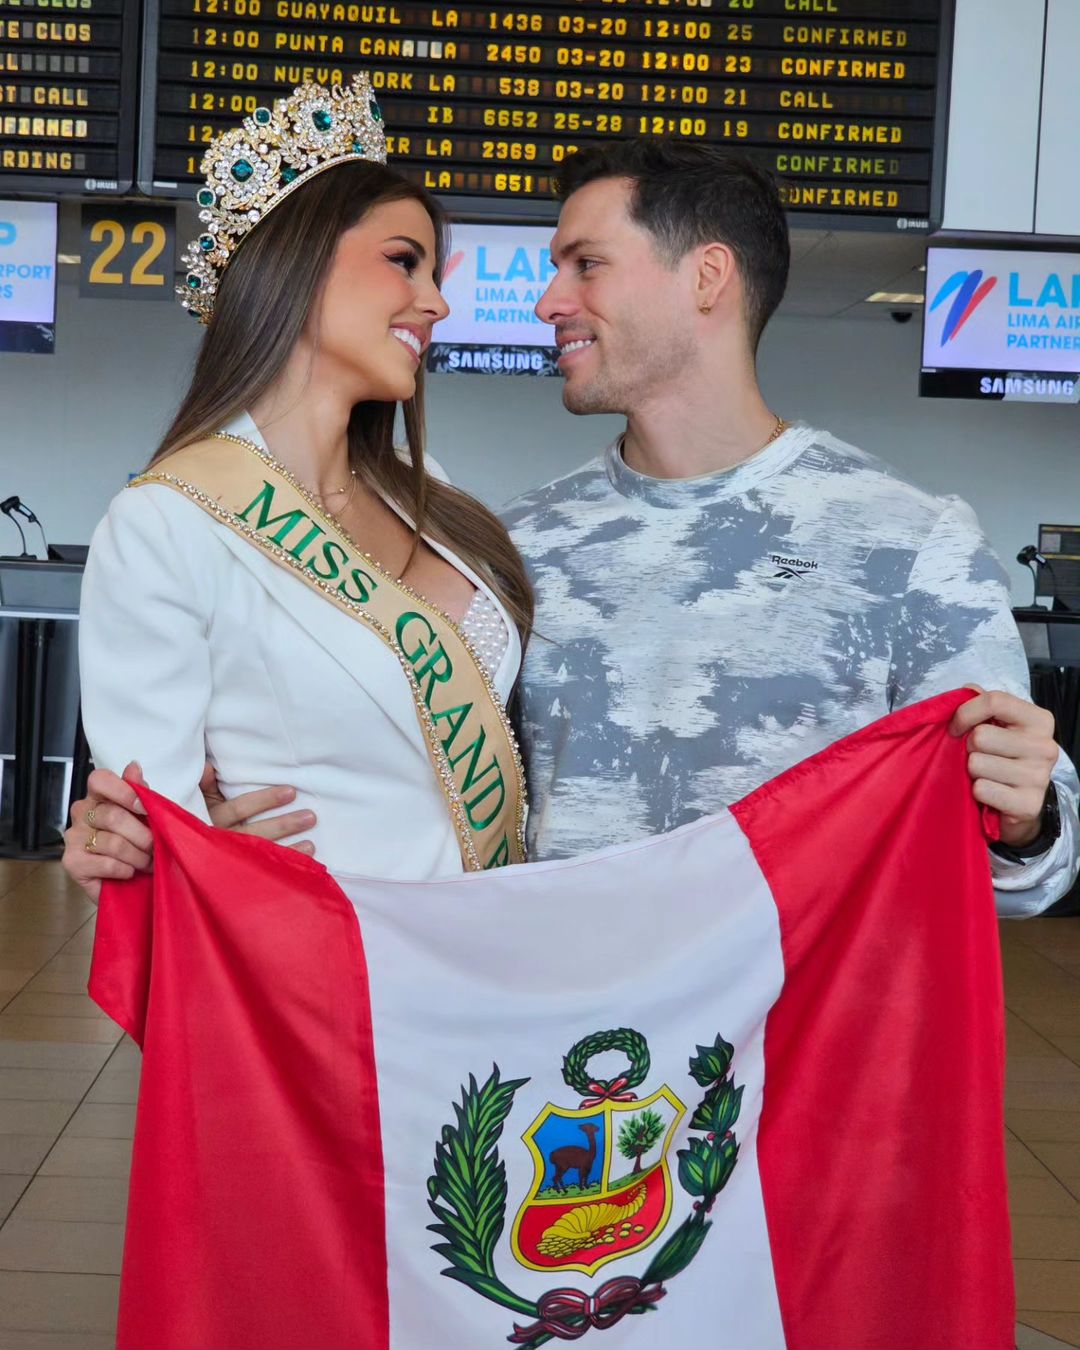 Ở 'cương vị mới' sau đăng quang MGI 2023, Hoa hậu Peru nói một câu gửi đến bạn trai cực ngọt ngào - ảnh 4